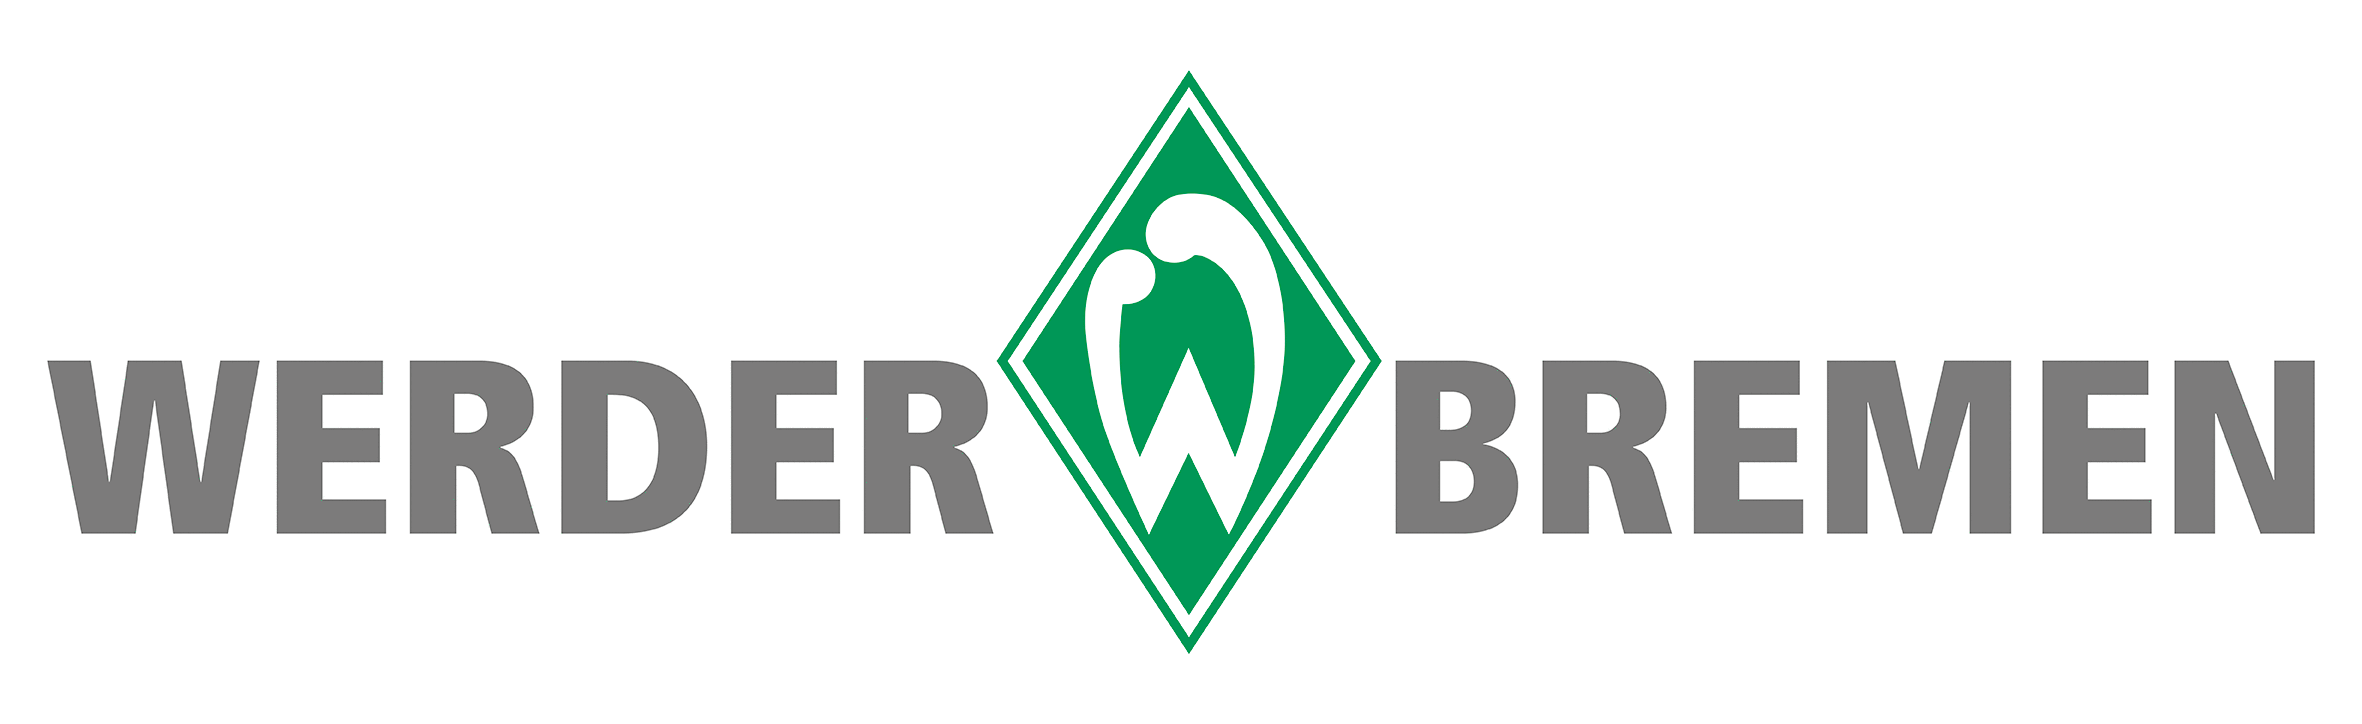 Richtlinien Und Logos Medienservice Sv Werder Bremen Sv Werder Bremen